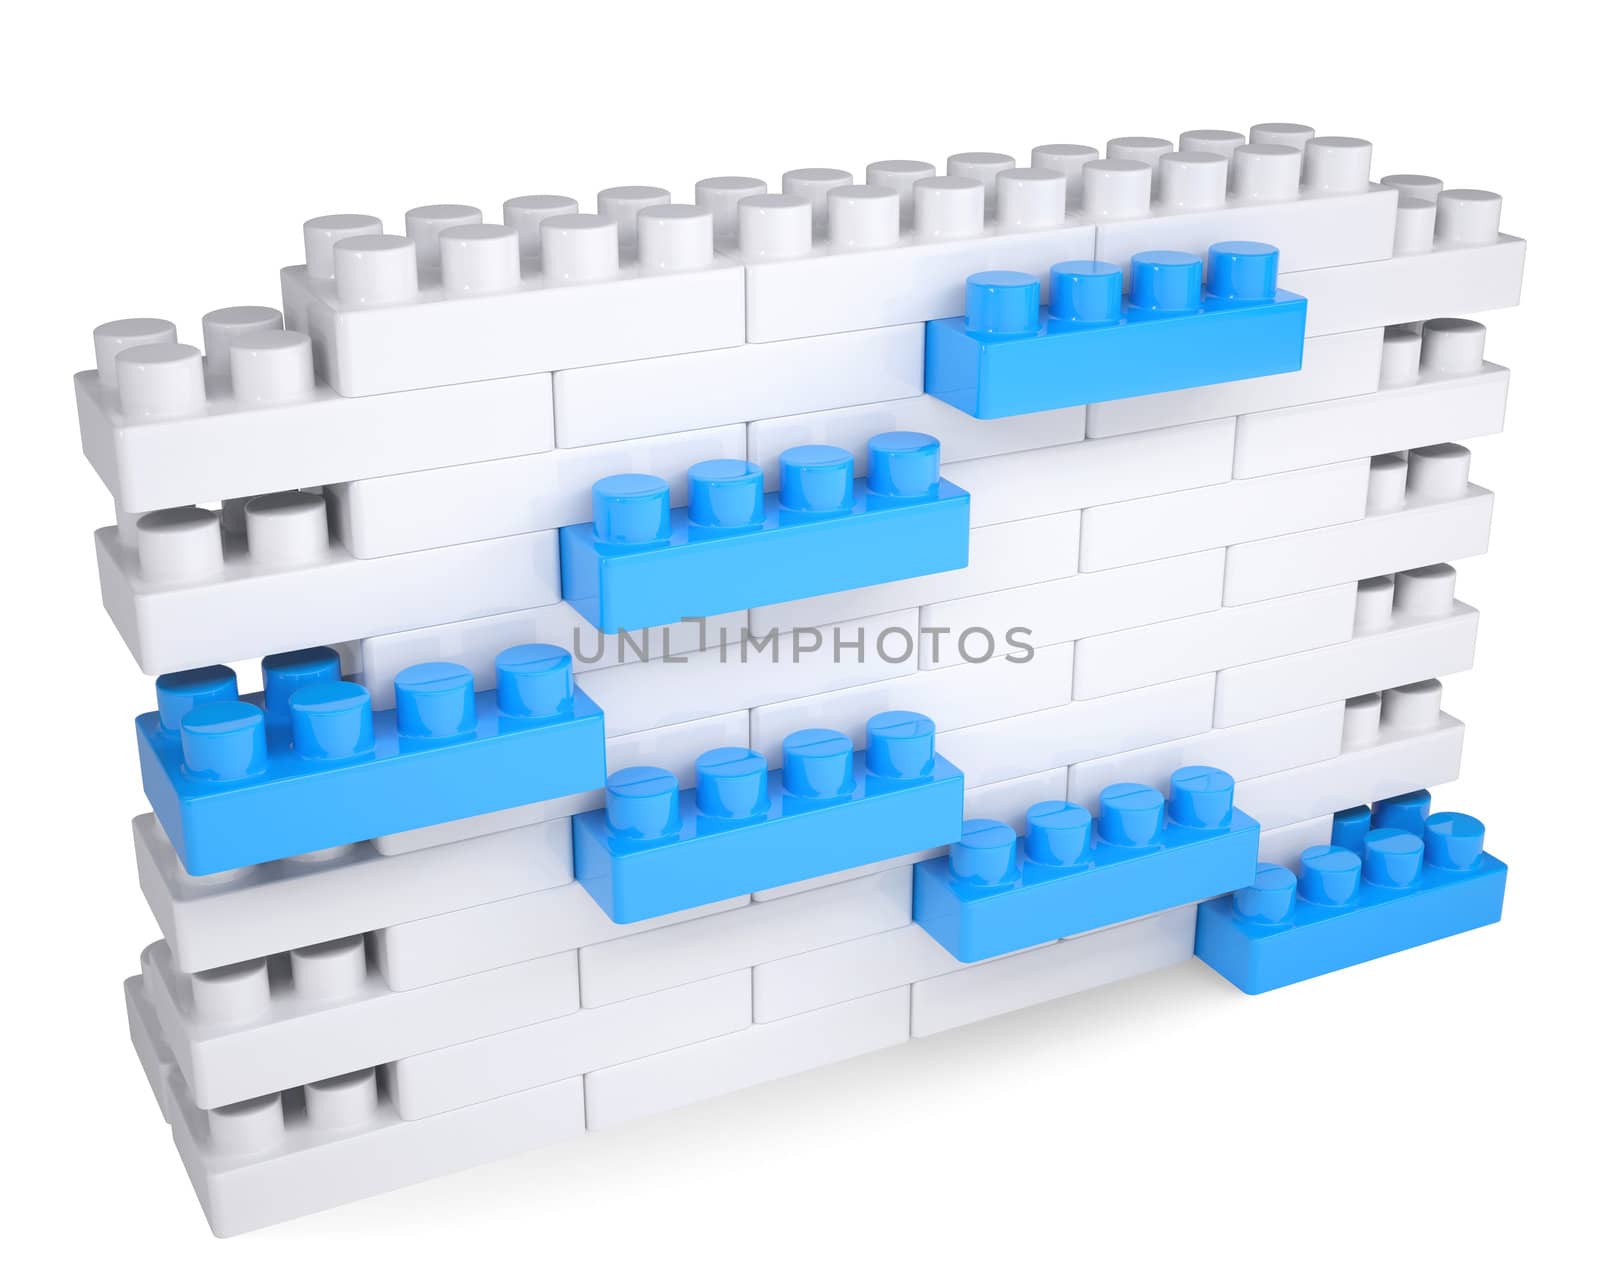 Wall made of bricks by cherezoff